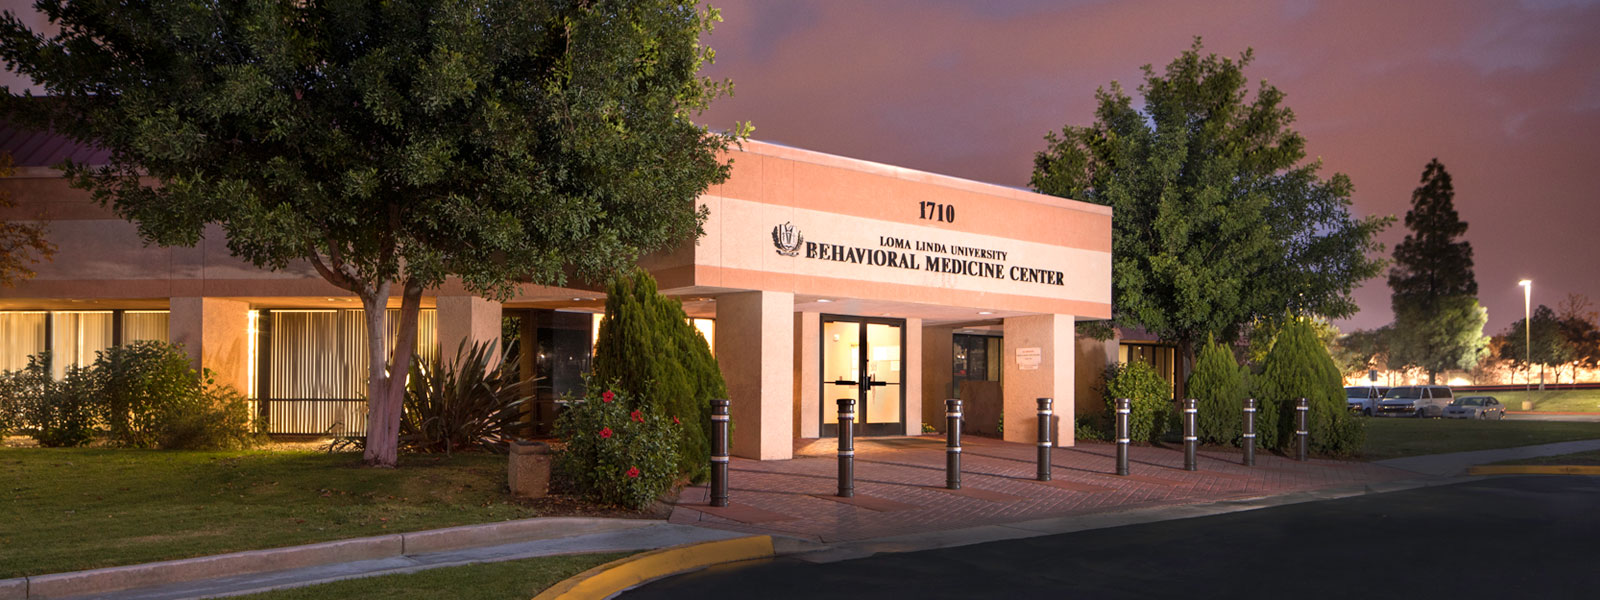 Loma Linda Behavioral Medicine Center